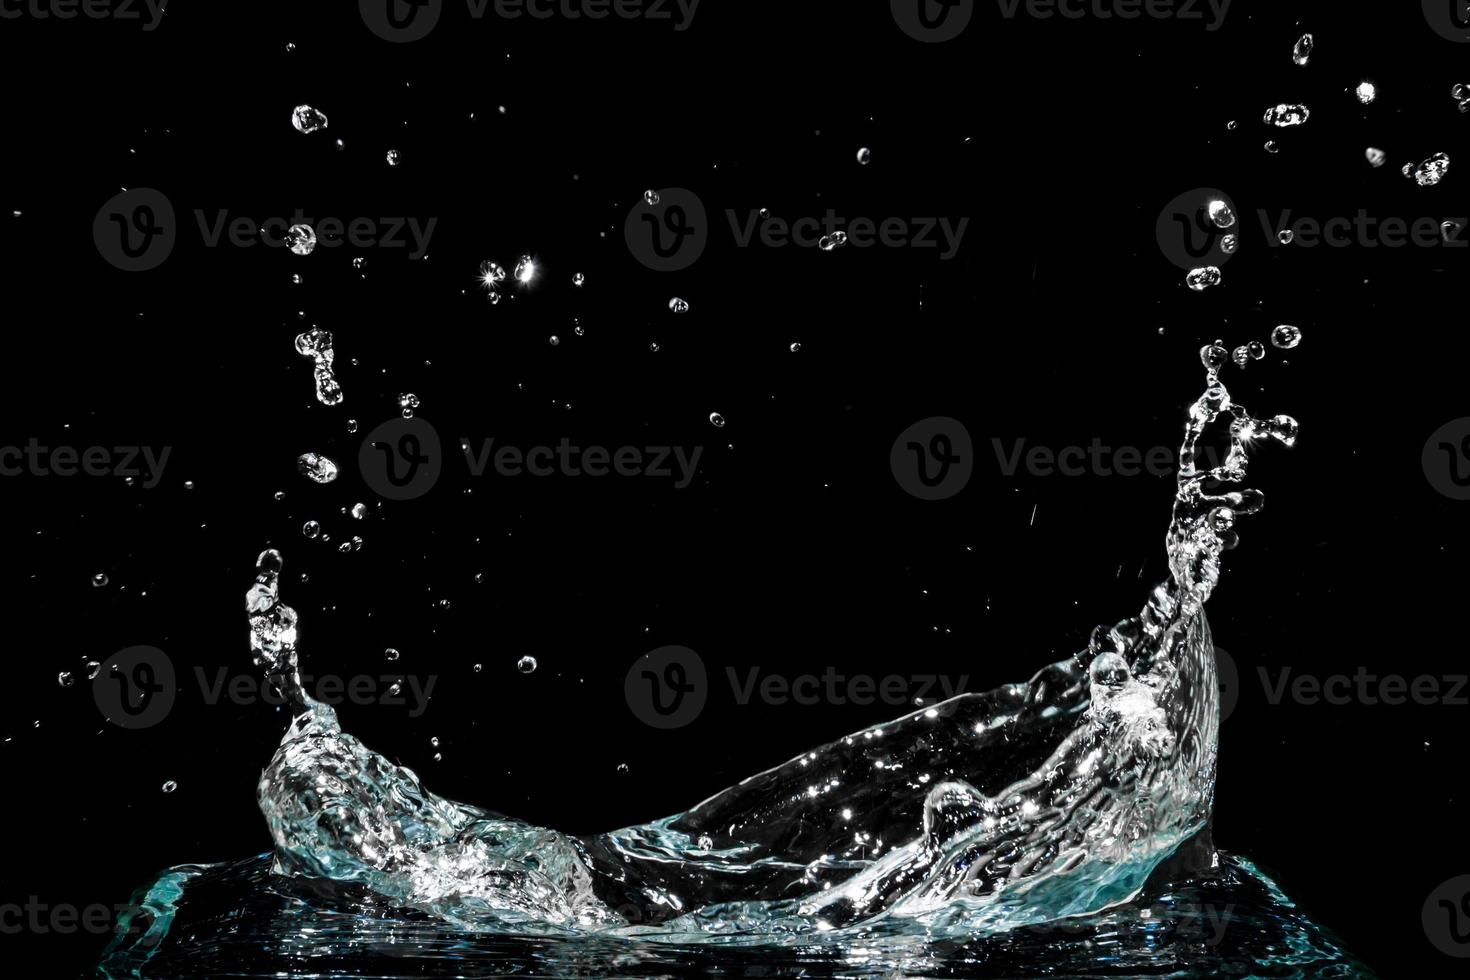 Water splash isolated on black background photo